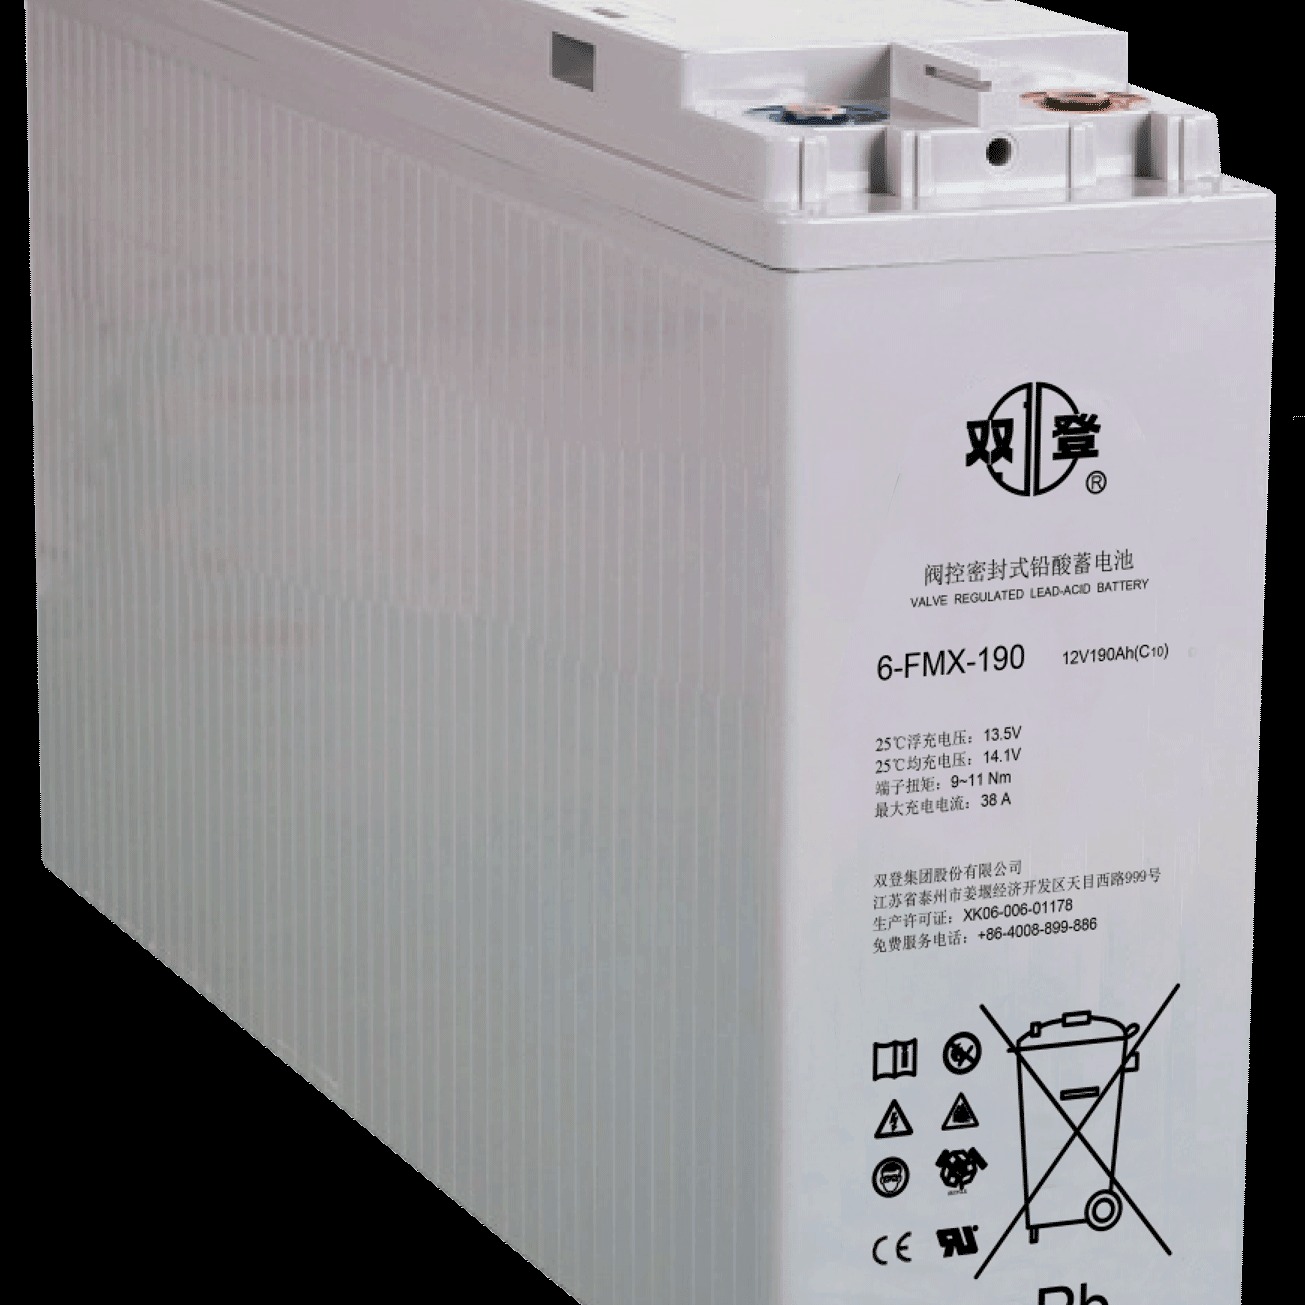 双登蓄电池6-FMX-190 12V190AH狭长型前置端子蓄电池 发电厂 铁路 UPS直流屏系统专用 参数及价格